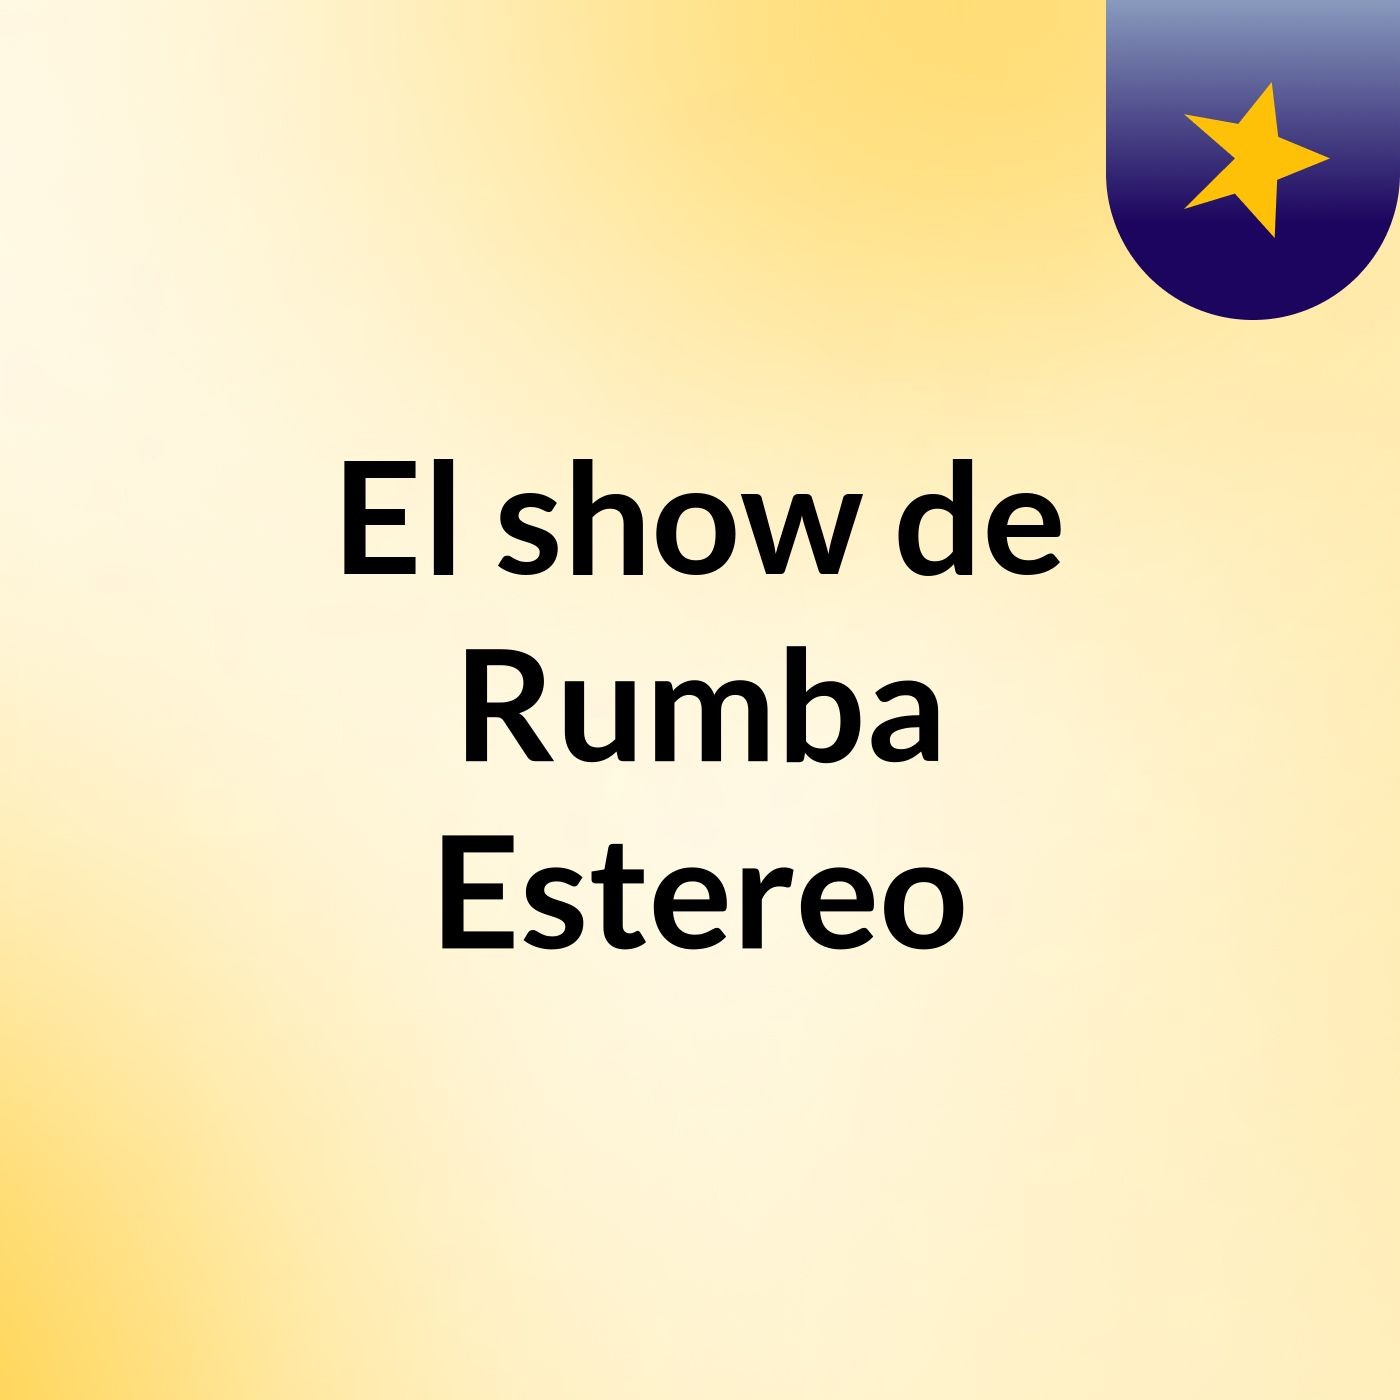 El show de Rumba Estereo